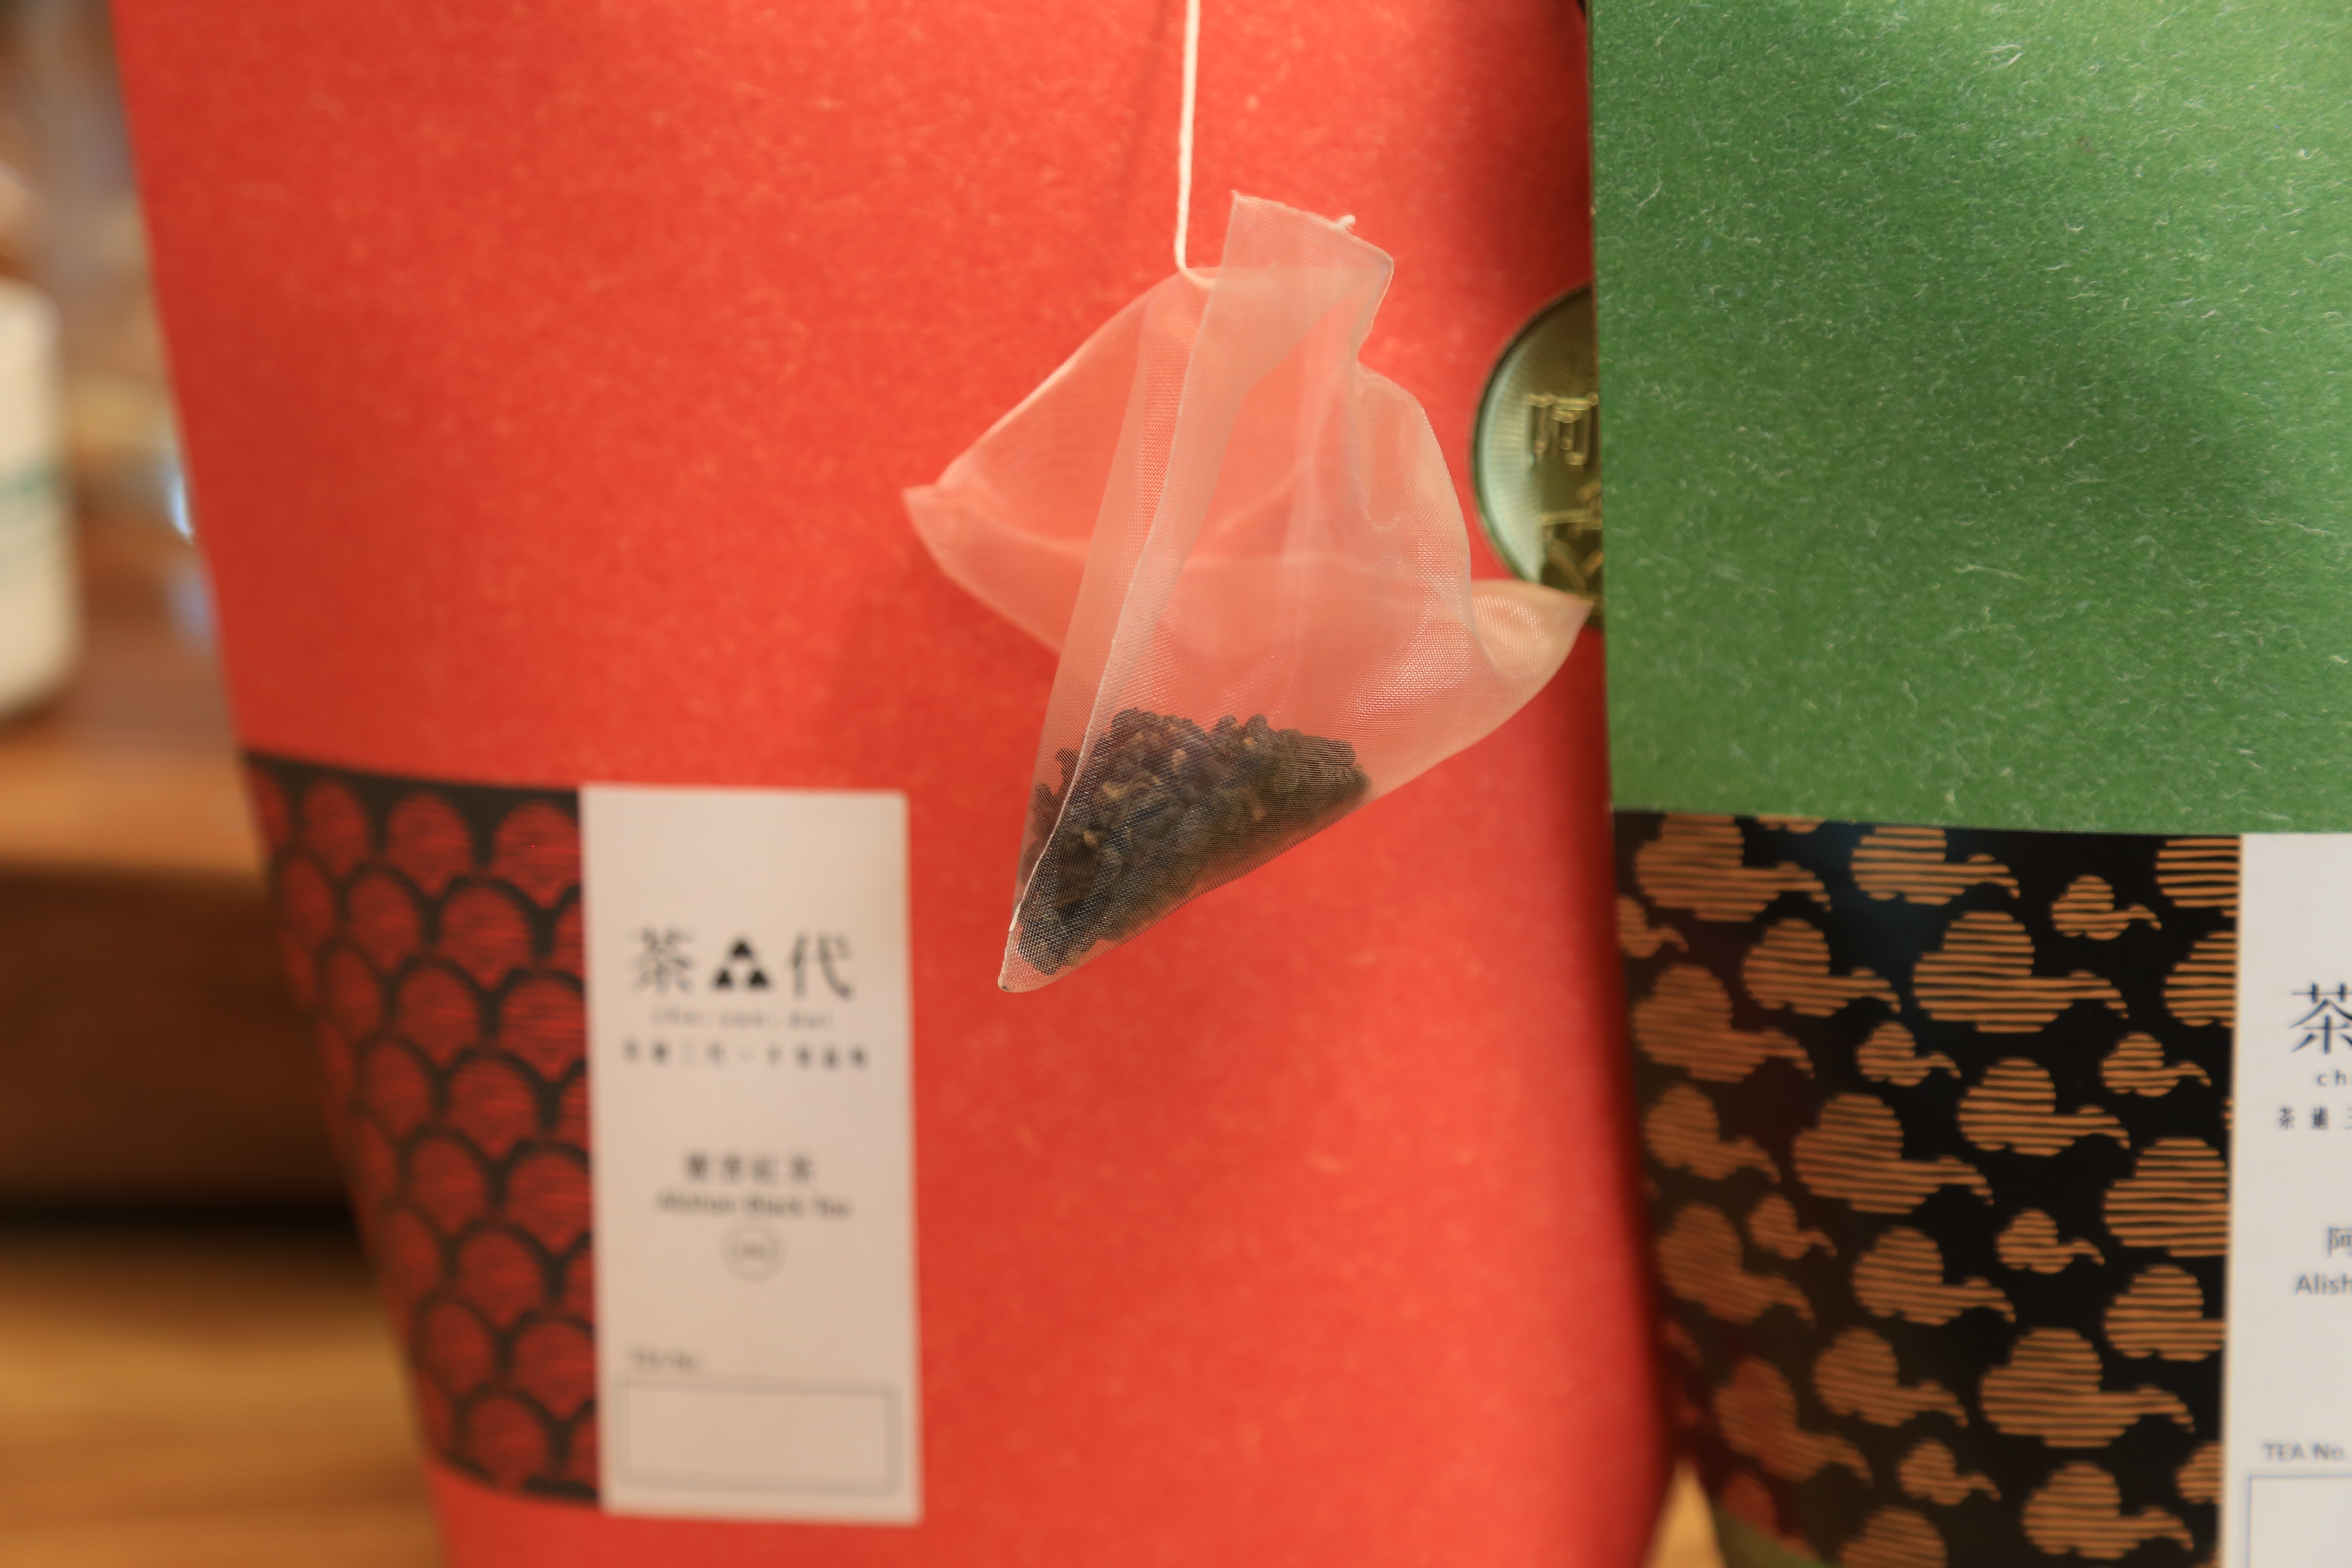 神農on line~嘉義好茶好鳳梨~茶叁代的醇香茶韻與阿美鳳梨的陽光燦爛,台灣好物的美好年代